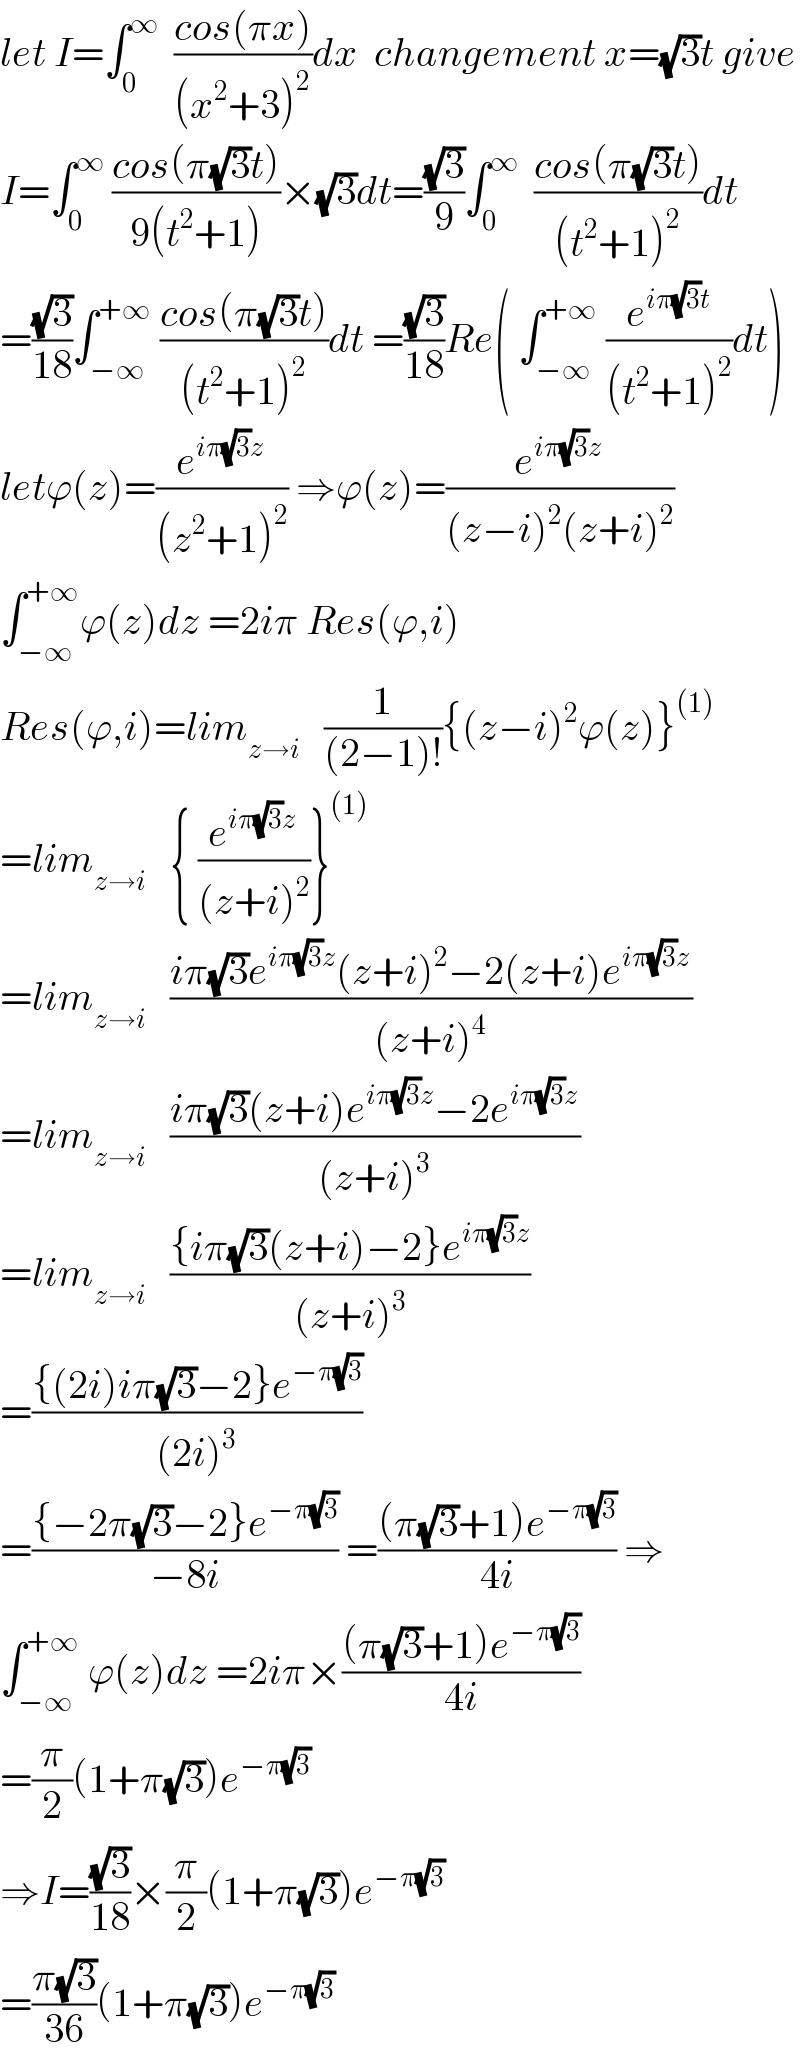 let I=∫_0 ^∞   ((cos(πx))/((x^2 +3)^2 ))dx  changement x=(√3)t give  I=∫_0 ^∞  ((cos(π(√3)t))/(9(t^2 +1)))×(√3)dt=((√3)/9)∫_0 ^∞   ((cos(π(√3)t))/((t^2 +1)^2 ))dt  =((√3)/(18))∫_(−∞) ^(+∞)  ((cos(π(√3)t))/((t^2 +1)^2 ))dt =((√3)/(18))Re( ∫_(−∞) ^(+∞)  (e^(iπ(√3)t) /((t^2 +1)^2 ))dt)  letϕ(z)=(e^(iπ(√3)z) /((z^2 +1)^2 )) ⇒ϕ(z)=(e^(iπ(√3)z) /((z−i)^2 (z+i)^2 ))  ∫_(−∞) ^(+∞) ϕ(z)dz =2iπ Res(ϕ,i)  Res(ϕ,i)=lim_(z→i)    (1/((2−1)!)){(z−i)^2 ϕ(z)}^((1))   =lim_(z→i)    { (e^(iπ(√3)z) /((z+i)^2 ))}^((1))   =lim_(z→i)    ((iπ(√3)e^(iπ(√3)z) (z+i)^2 −2(z+i)e^(iπ(√3)z) )/((z+i)^4 ))  =lim_(z→i)    ((iπ(√3)(z+i)e^(iπ(√3)z) −2e^(iπ(√3)z) )/((z+i)^3 ))  =lim_(z→i)    (({iπ(√3)(z+i)−2}e^(iπ(√3)z) )/((z+i)^3 ))  =(({(2i)iπ(√3)−2}e^(−π(√3)) )/((2i)^3 ))  =(({−2π(√3)−2}e^(−π(√3)) )/(−8i)) =(((π(√3)+1)e^(−π(√3)) )/(4i)) ⇒  ∫_(−∞) ^(+∞)  ϕ(z)dz =2iπ×(((π(√3)+1)e^(−π(√3)) )/(4i))  =(π/2)(1+π(√3))e^(−π(√3))   ⇒I=((√3)/(18))×(π/2)(1+π(√3))e^(−π(√3))   =((π(√3))/(36))(1+π(√3))e^(−π(√3))   